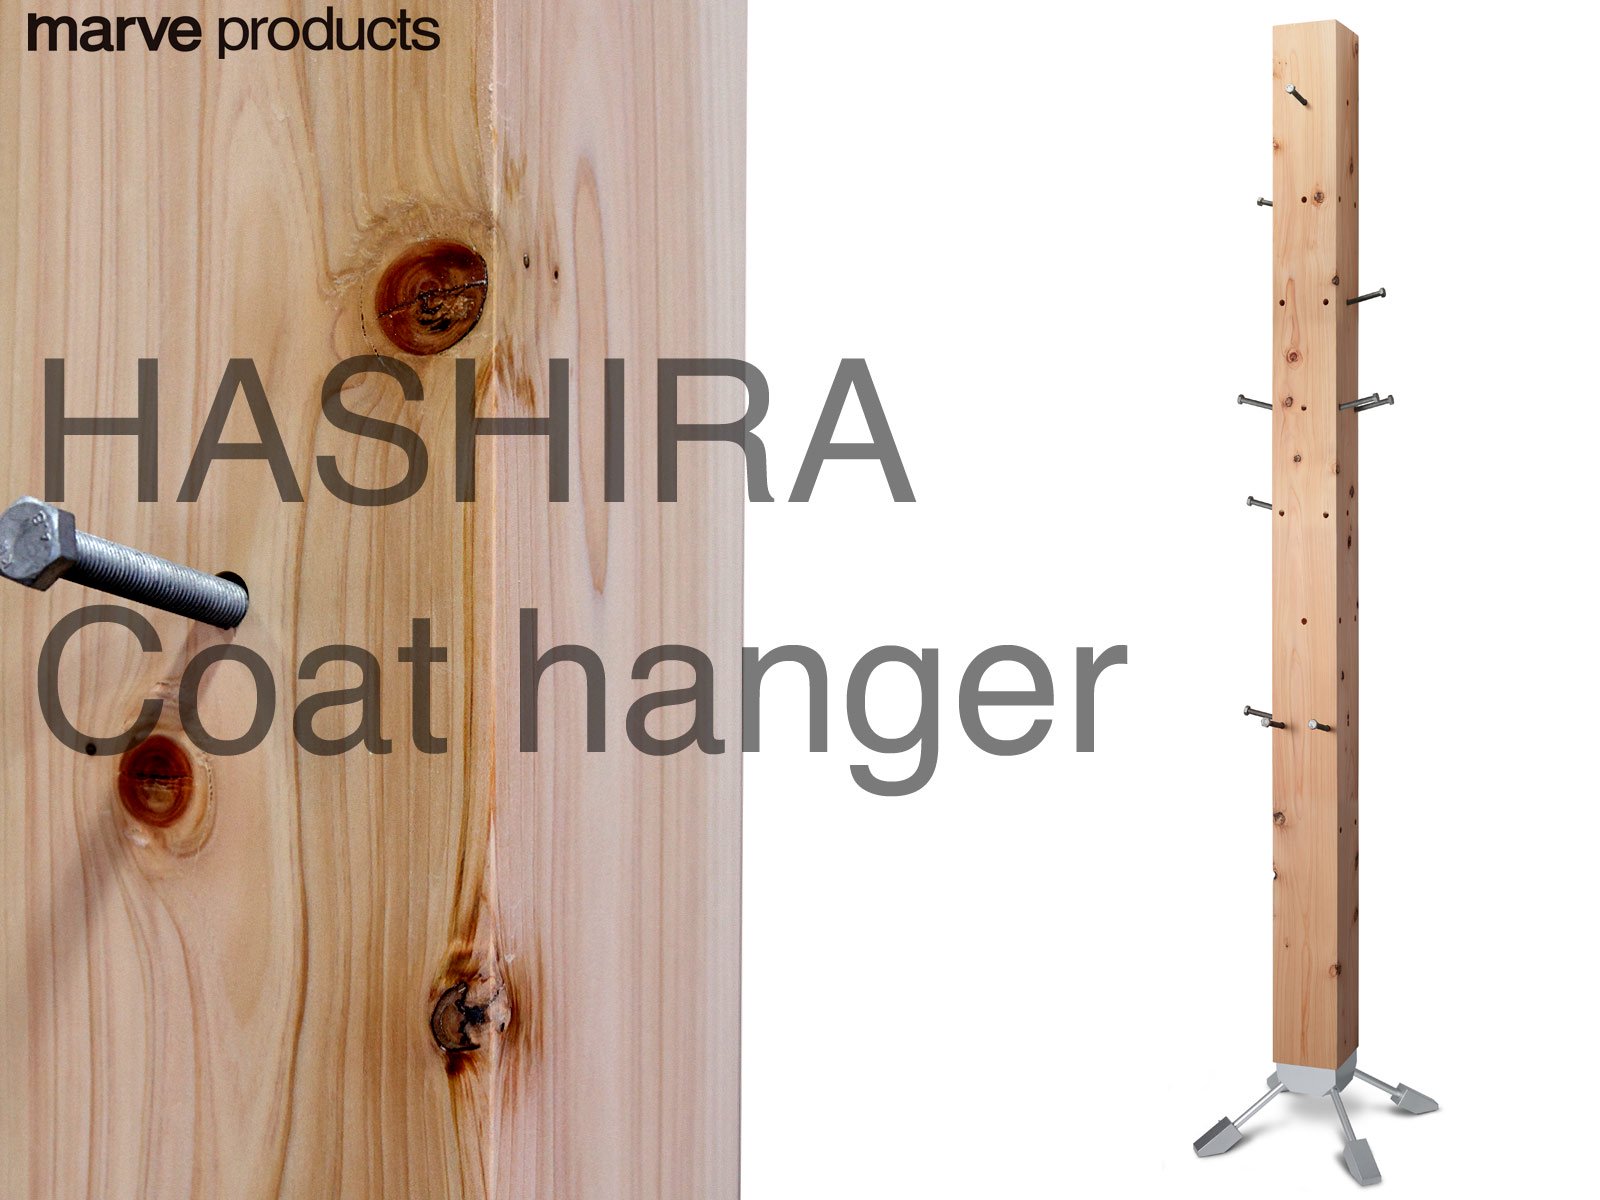 HASHIRA(柱) コートハンガー 国産ヒノキのハンドメイドプロダクト marve-products